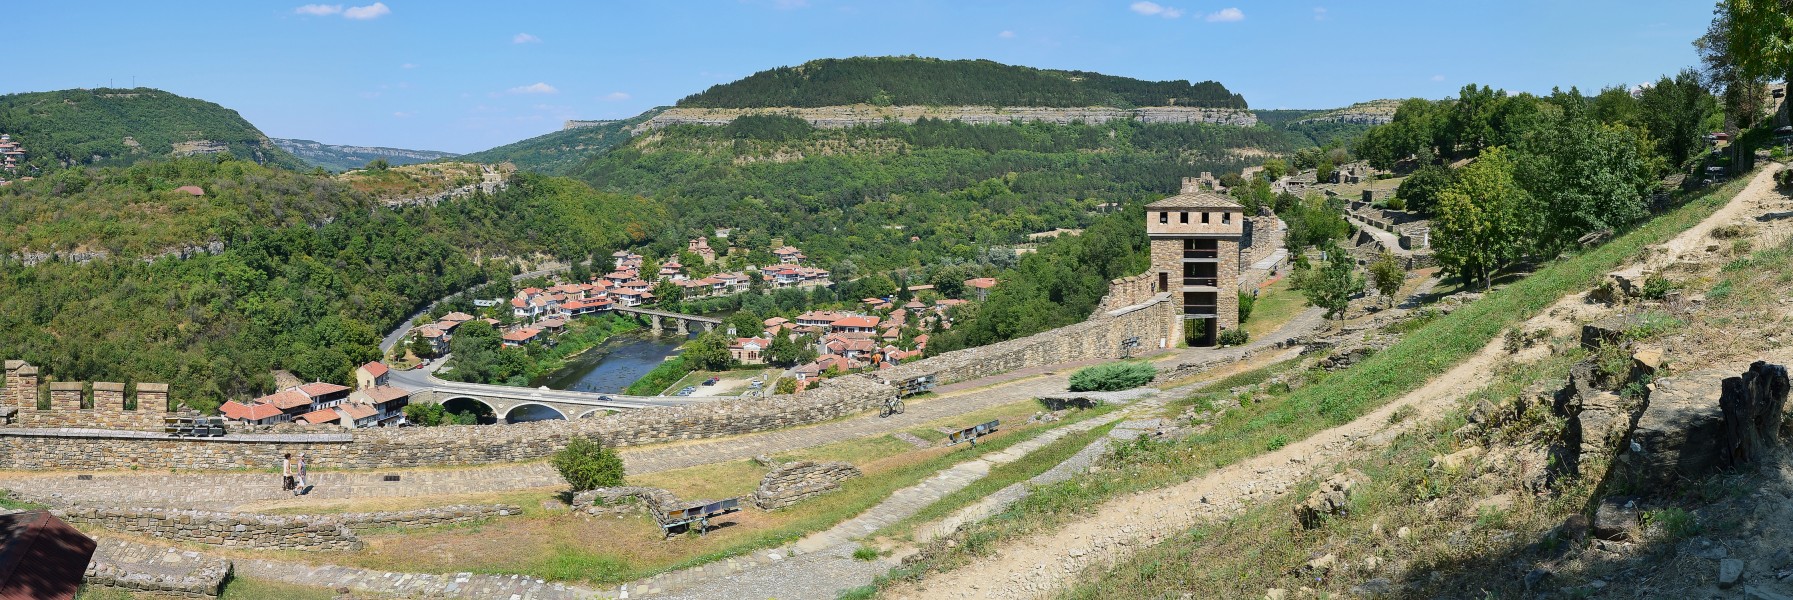 Veliko Tarnovo (Велико Търново) - view from Tsarevets 3